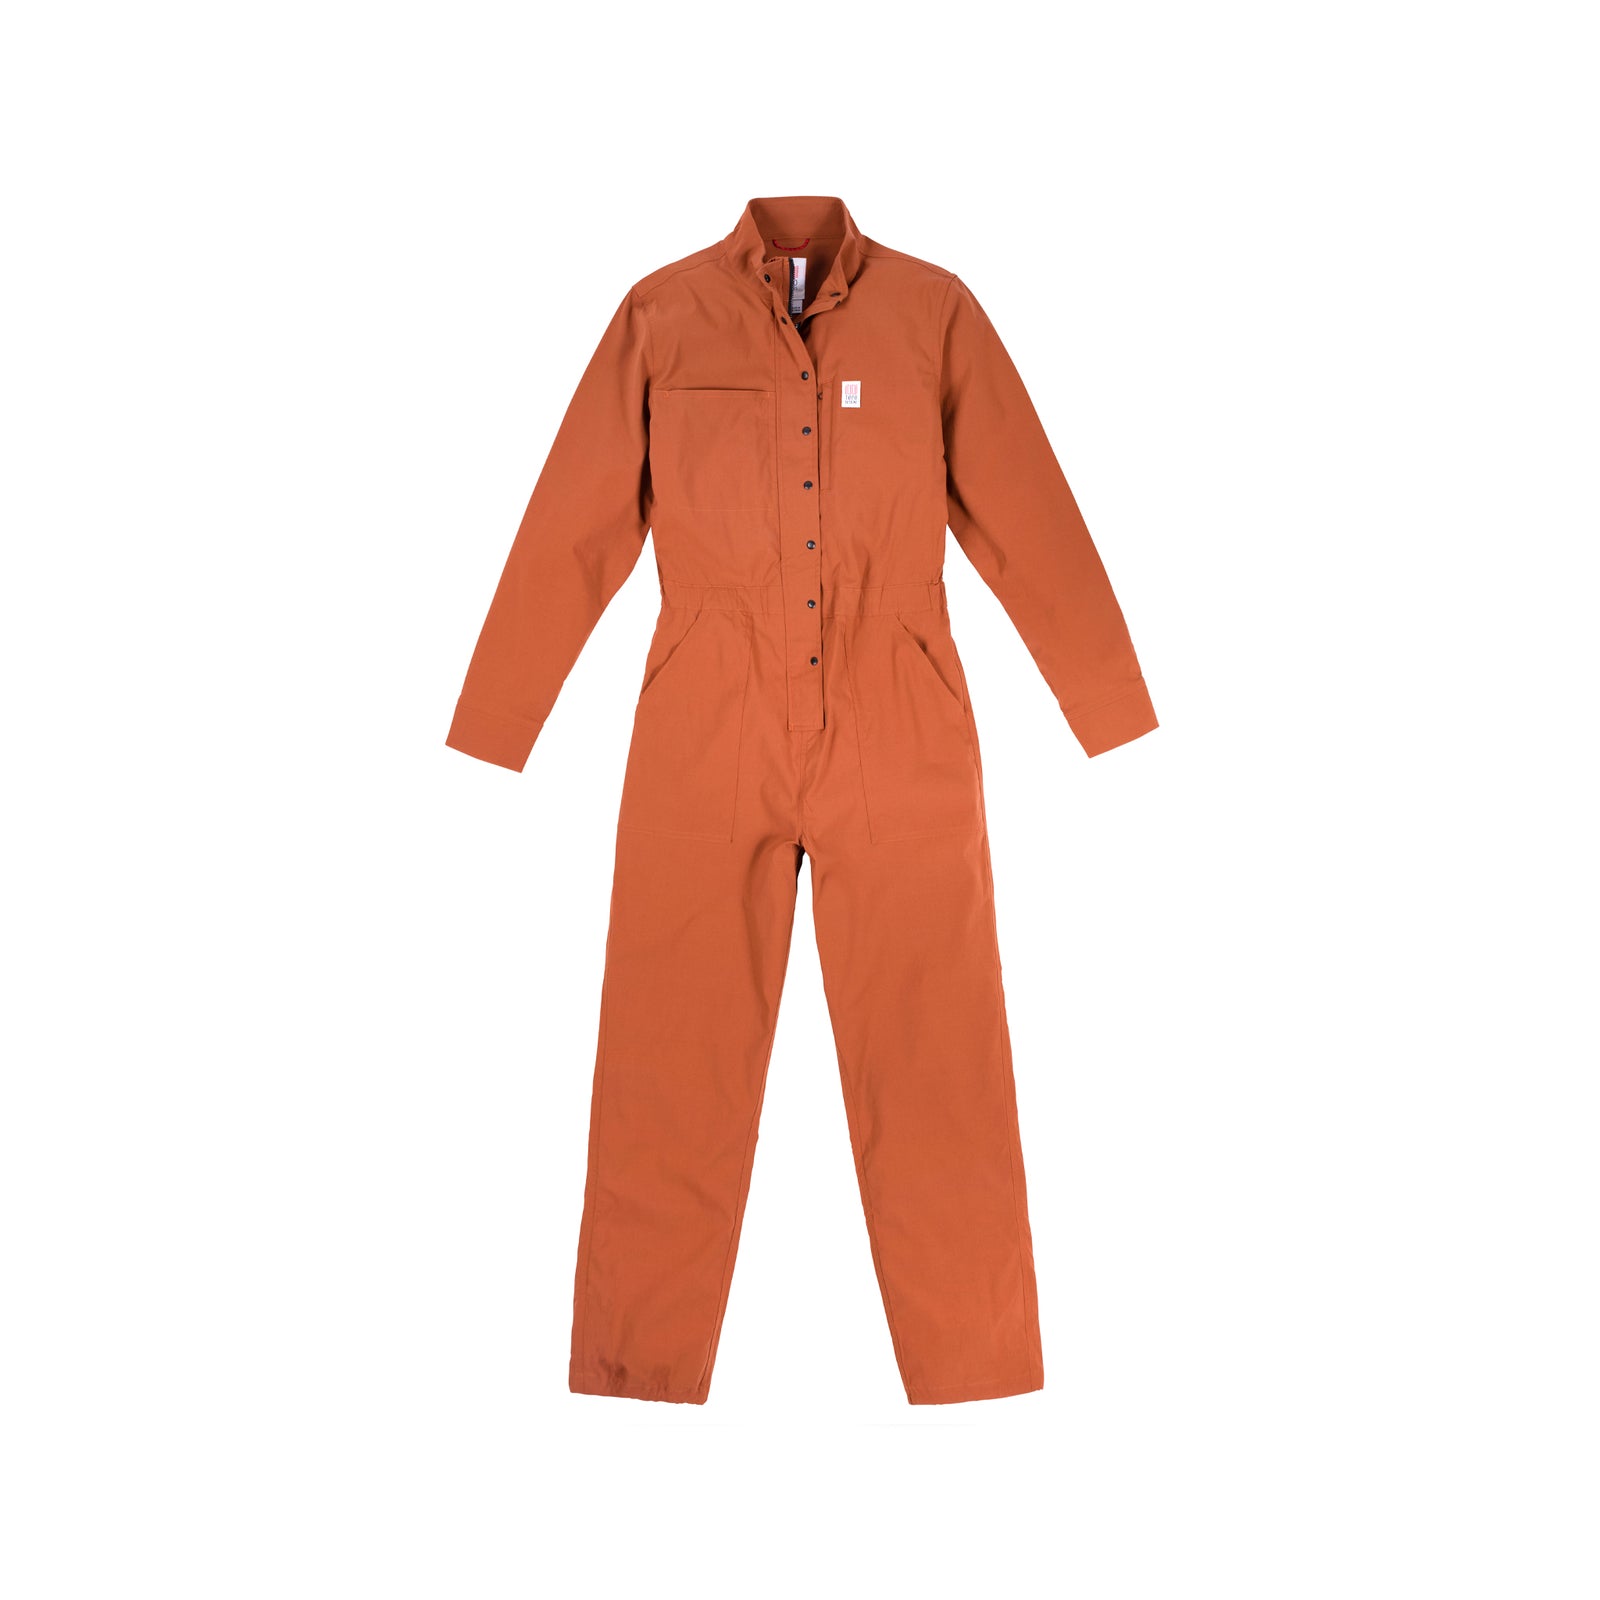 Topo Designs Women's Coverall jumpsuit in "Brick" orange.